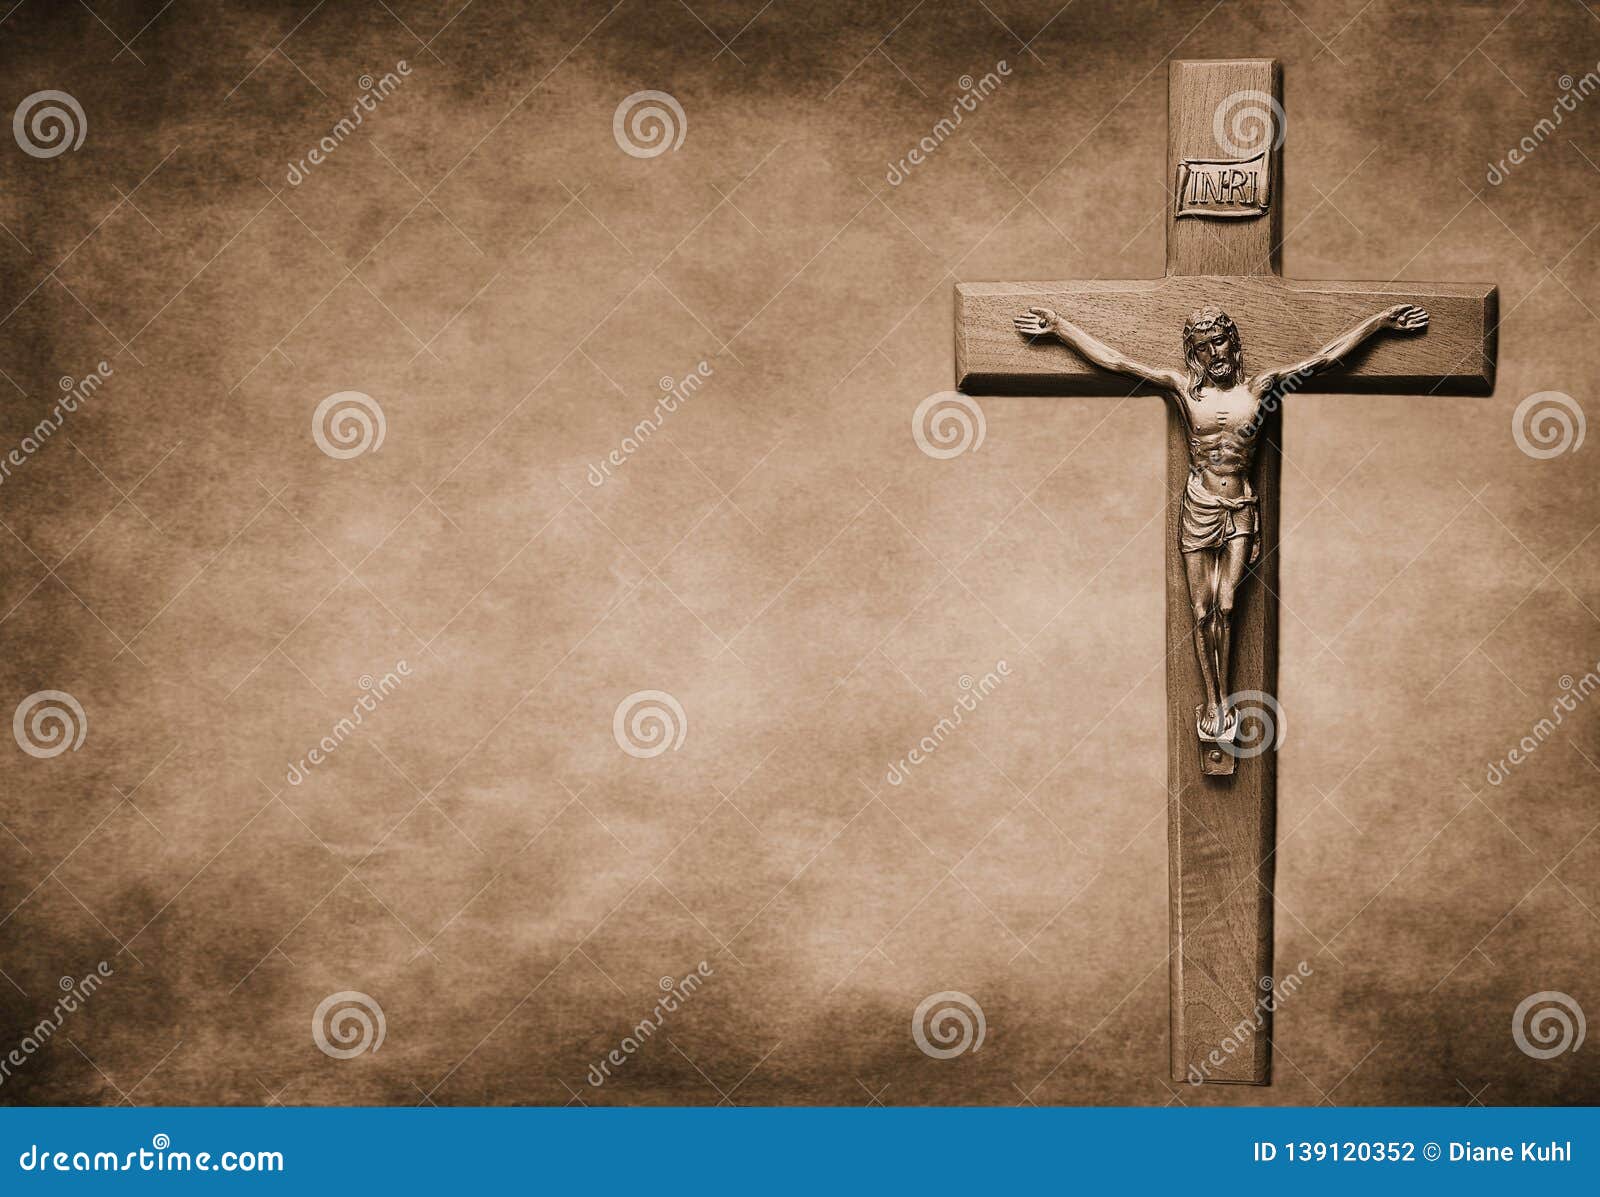 crucifix on large sepia toned background